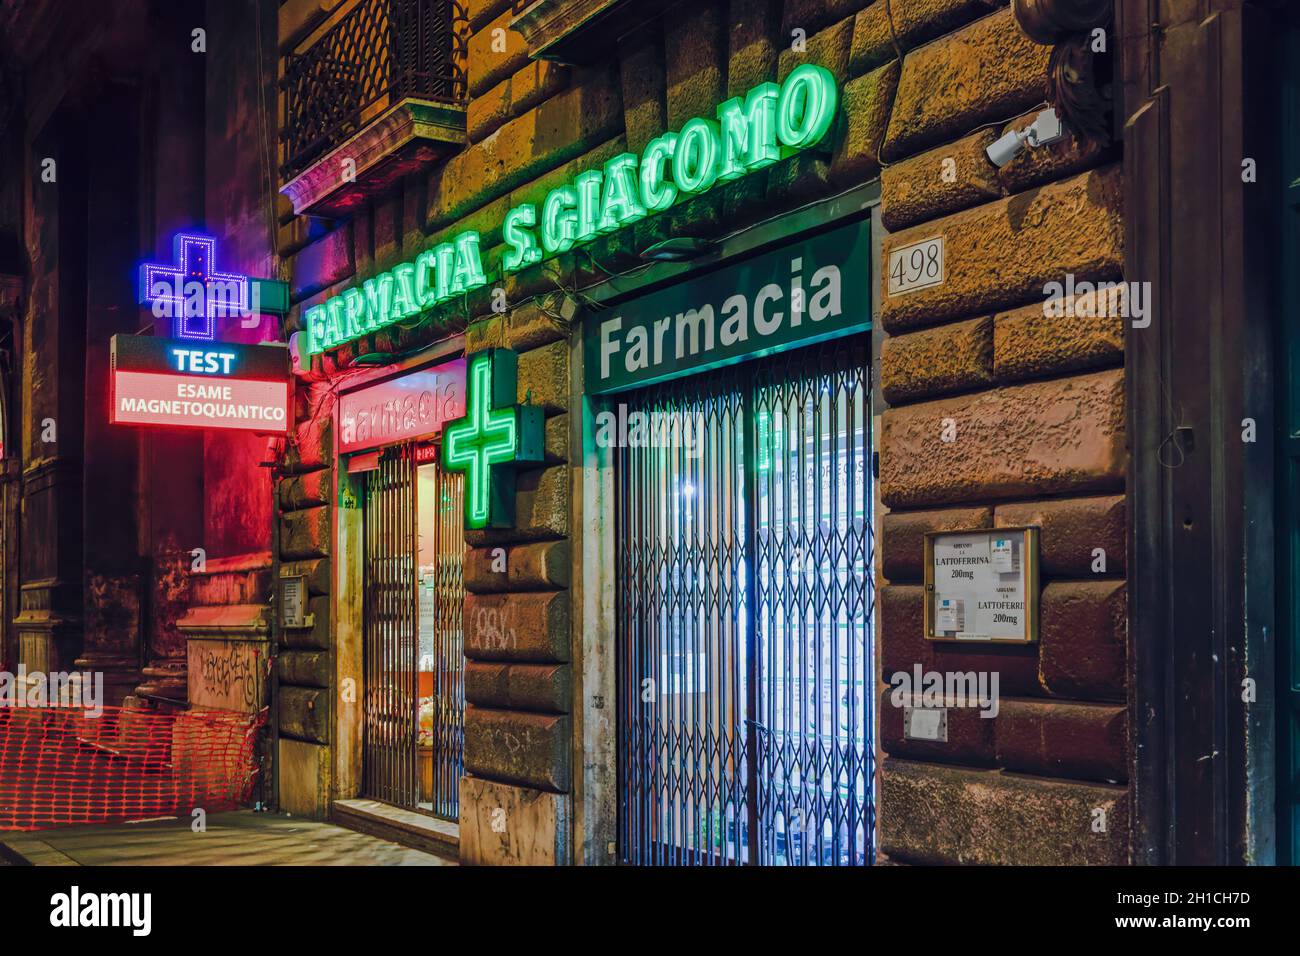 Rom, Italien Öffnen Apotheke Eingang mit Quantum Magneto-Testschild. Außenansicht des italienischen Pharmazeutikladens mit beleuchtetem grünen Display und Schaufenster. Stockfoto